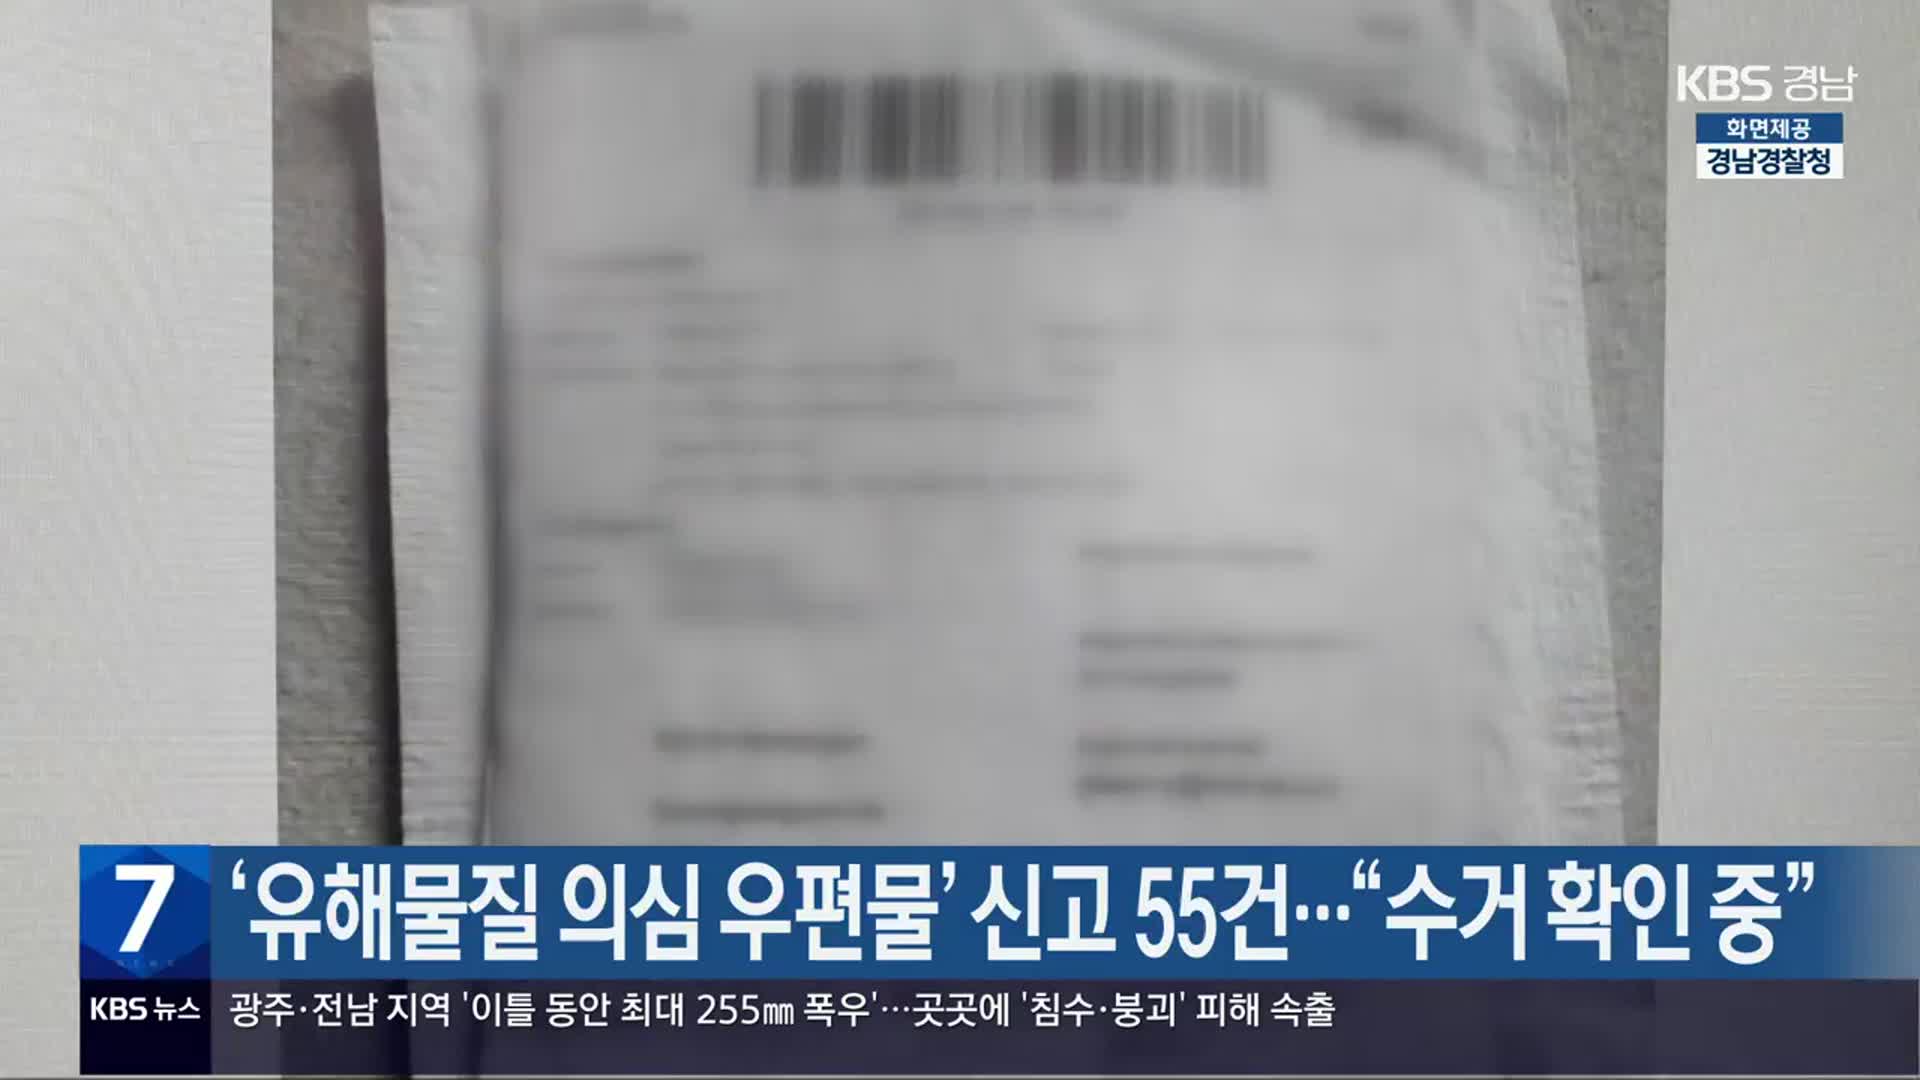 ‘유해물질 의심 우편물’ 신고 경남 55건…“수거 확인 중”